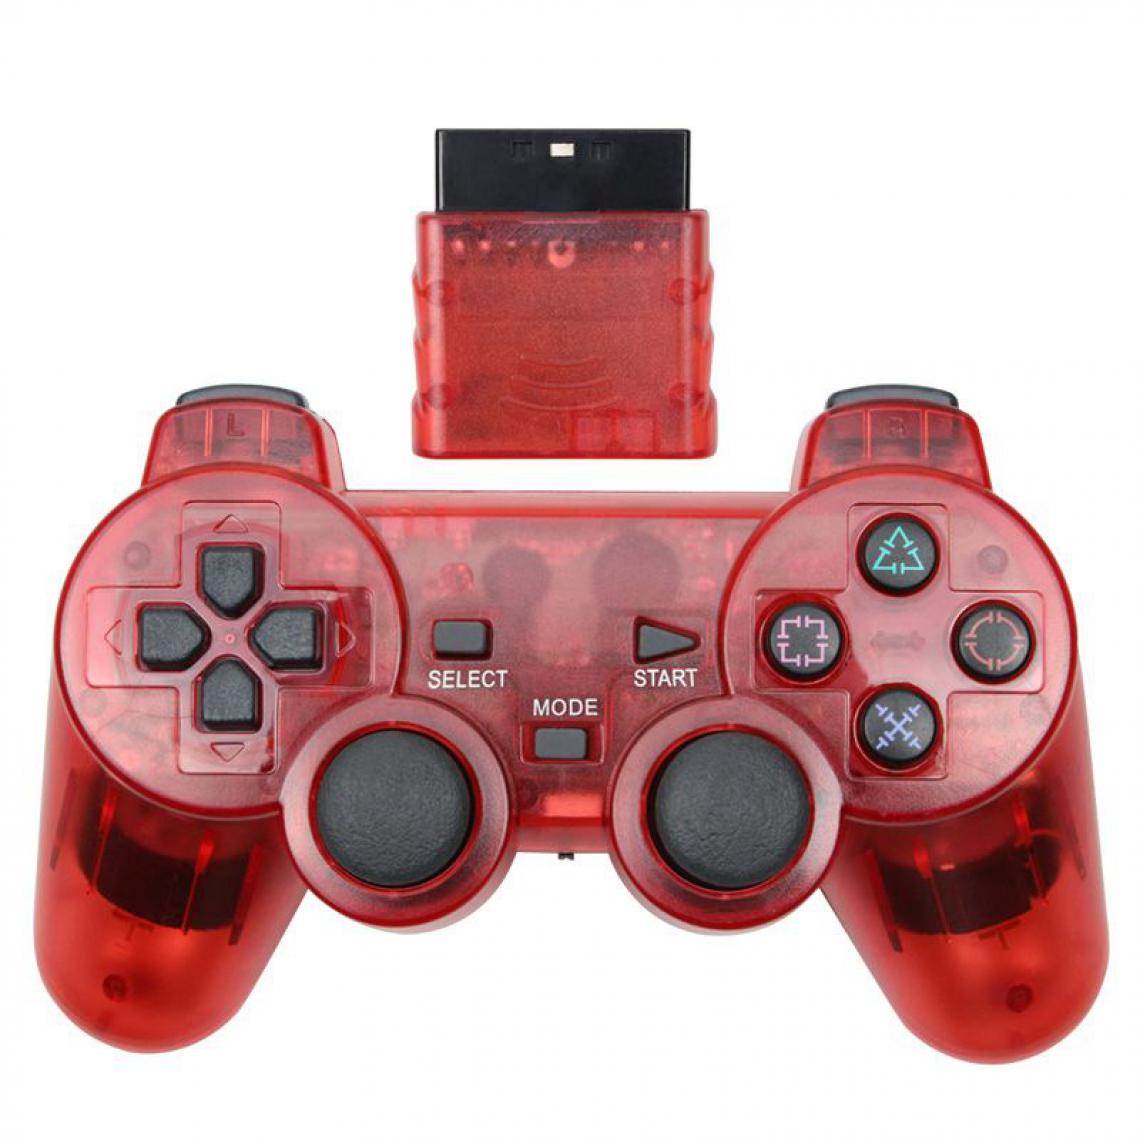 Generic - Manette de jeu sans fil , Joystick, Double Vibration, antichoc  et contrôleur USB pour Console Playstation 2 16 * 9.5 cm - Rouge  - Joystick